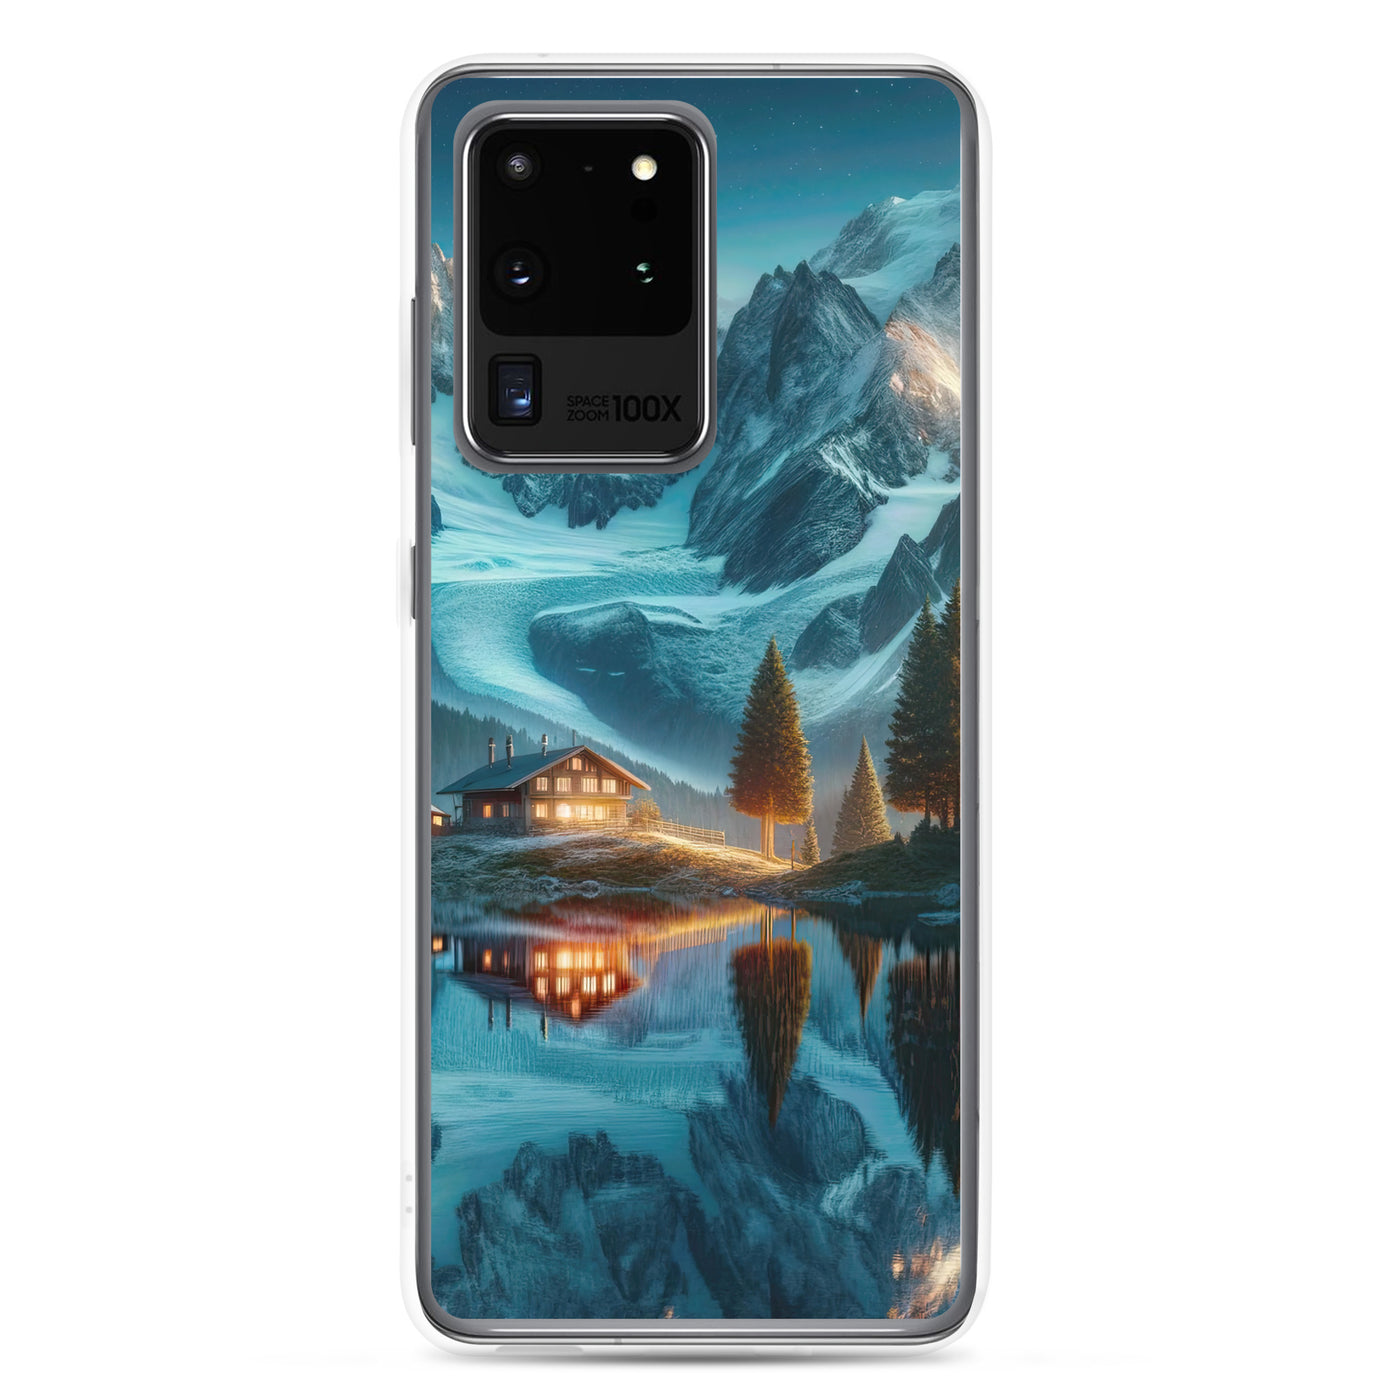 Stille Alpenmajestätik: Digitale Kunst mit Schnee und Bergsee-Spiegelung - Samsung Schutzhülle (durchsichtig) berge xxx yyy zzz Samsung Galaxy S20 Ultra